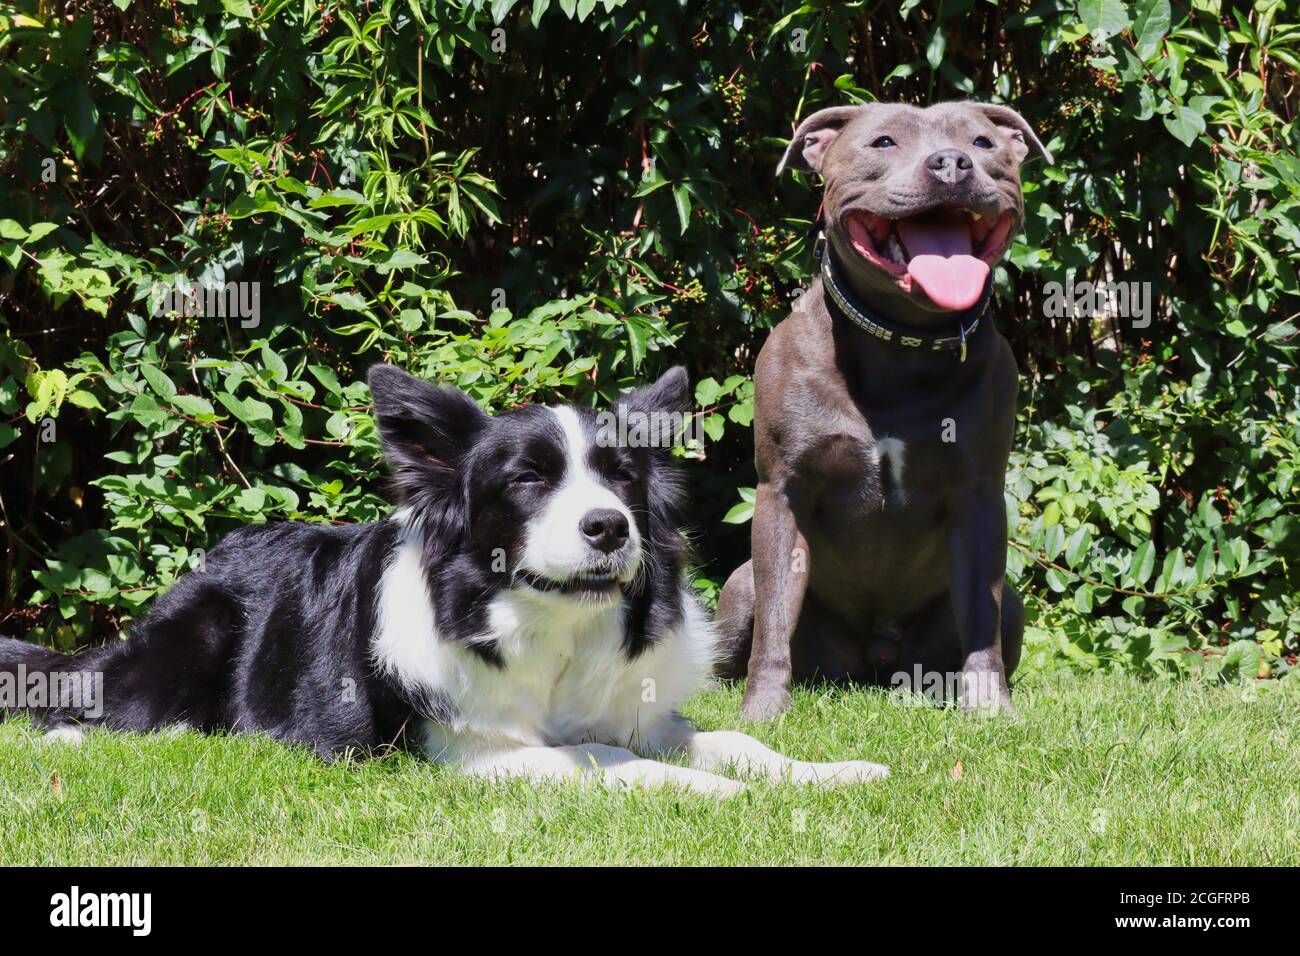 Englisch Staffordshire Bull Terrier und Border Collie Hanging out in the Garden during Sunny Day. Freundliche Blue Staffy und Schwarz und Weiß Hund. Stockfoto